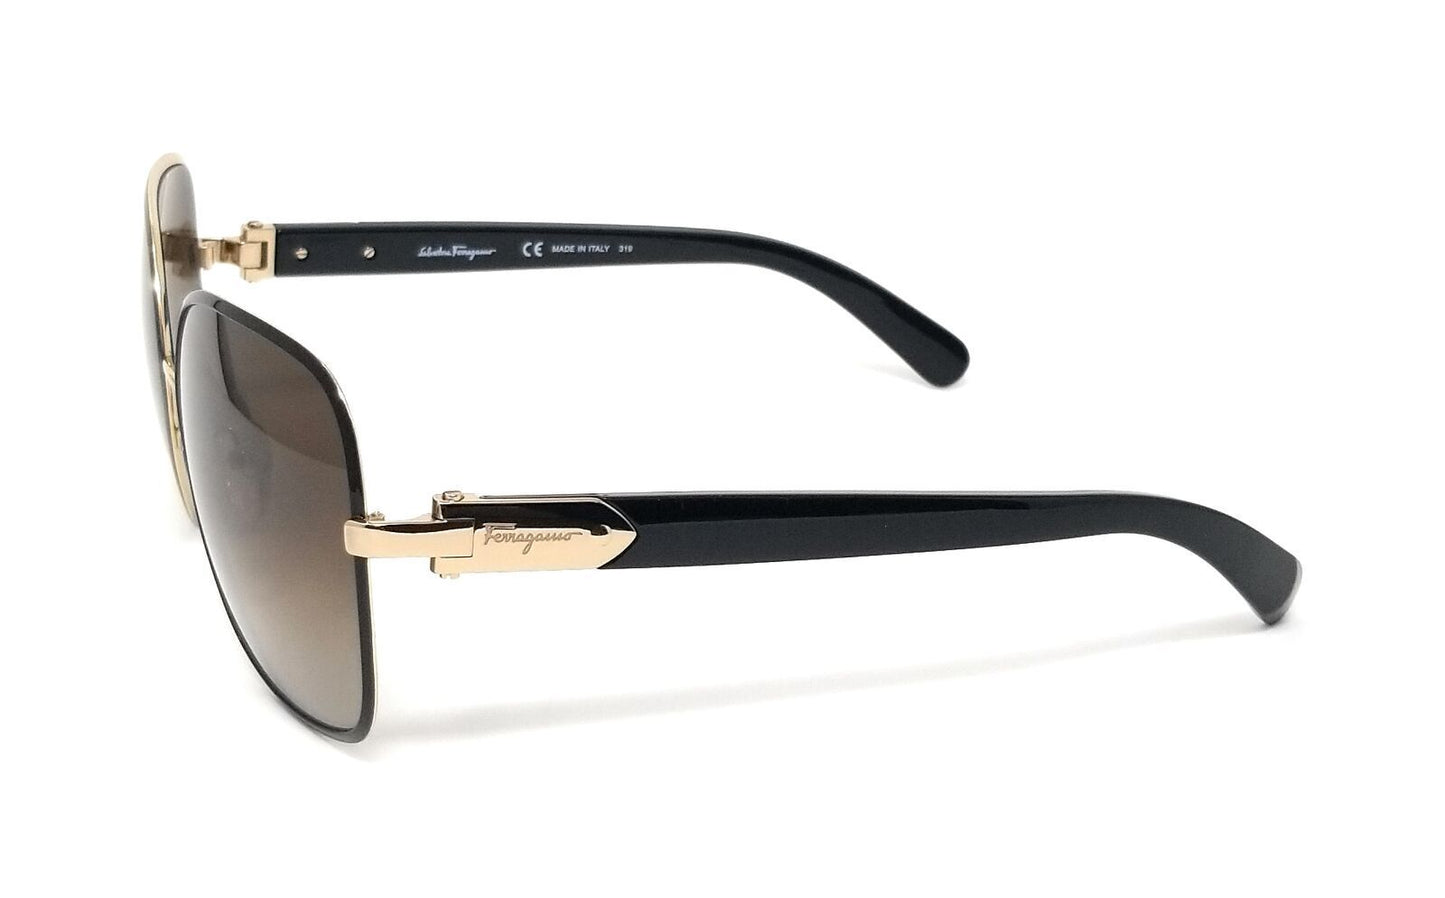 Salvatore Ferragamo SF150S-733 58mm New Sunglasses